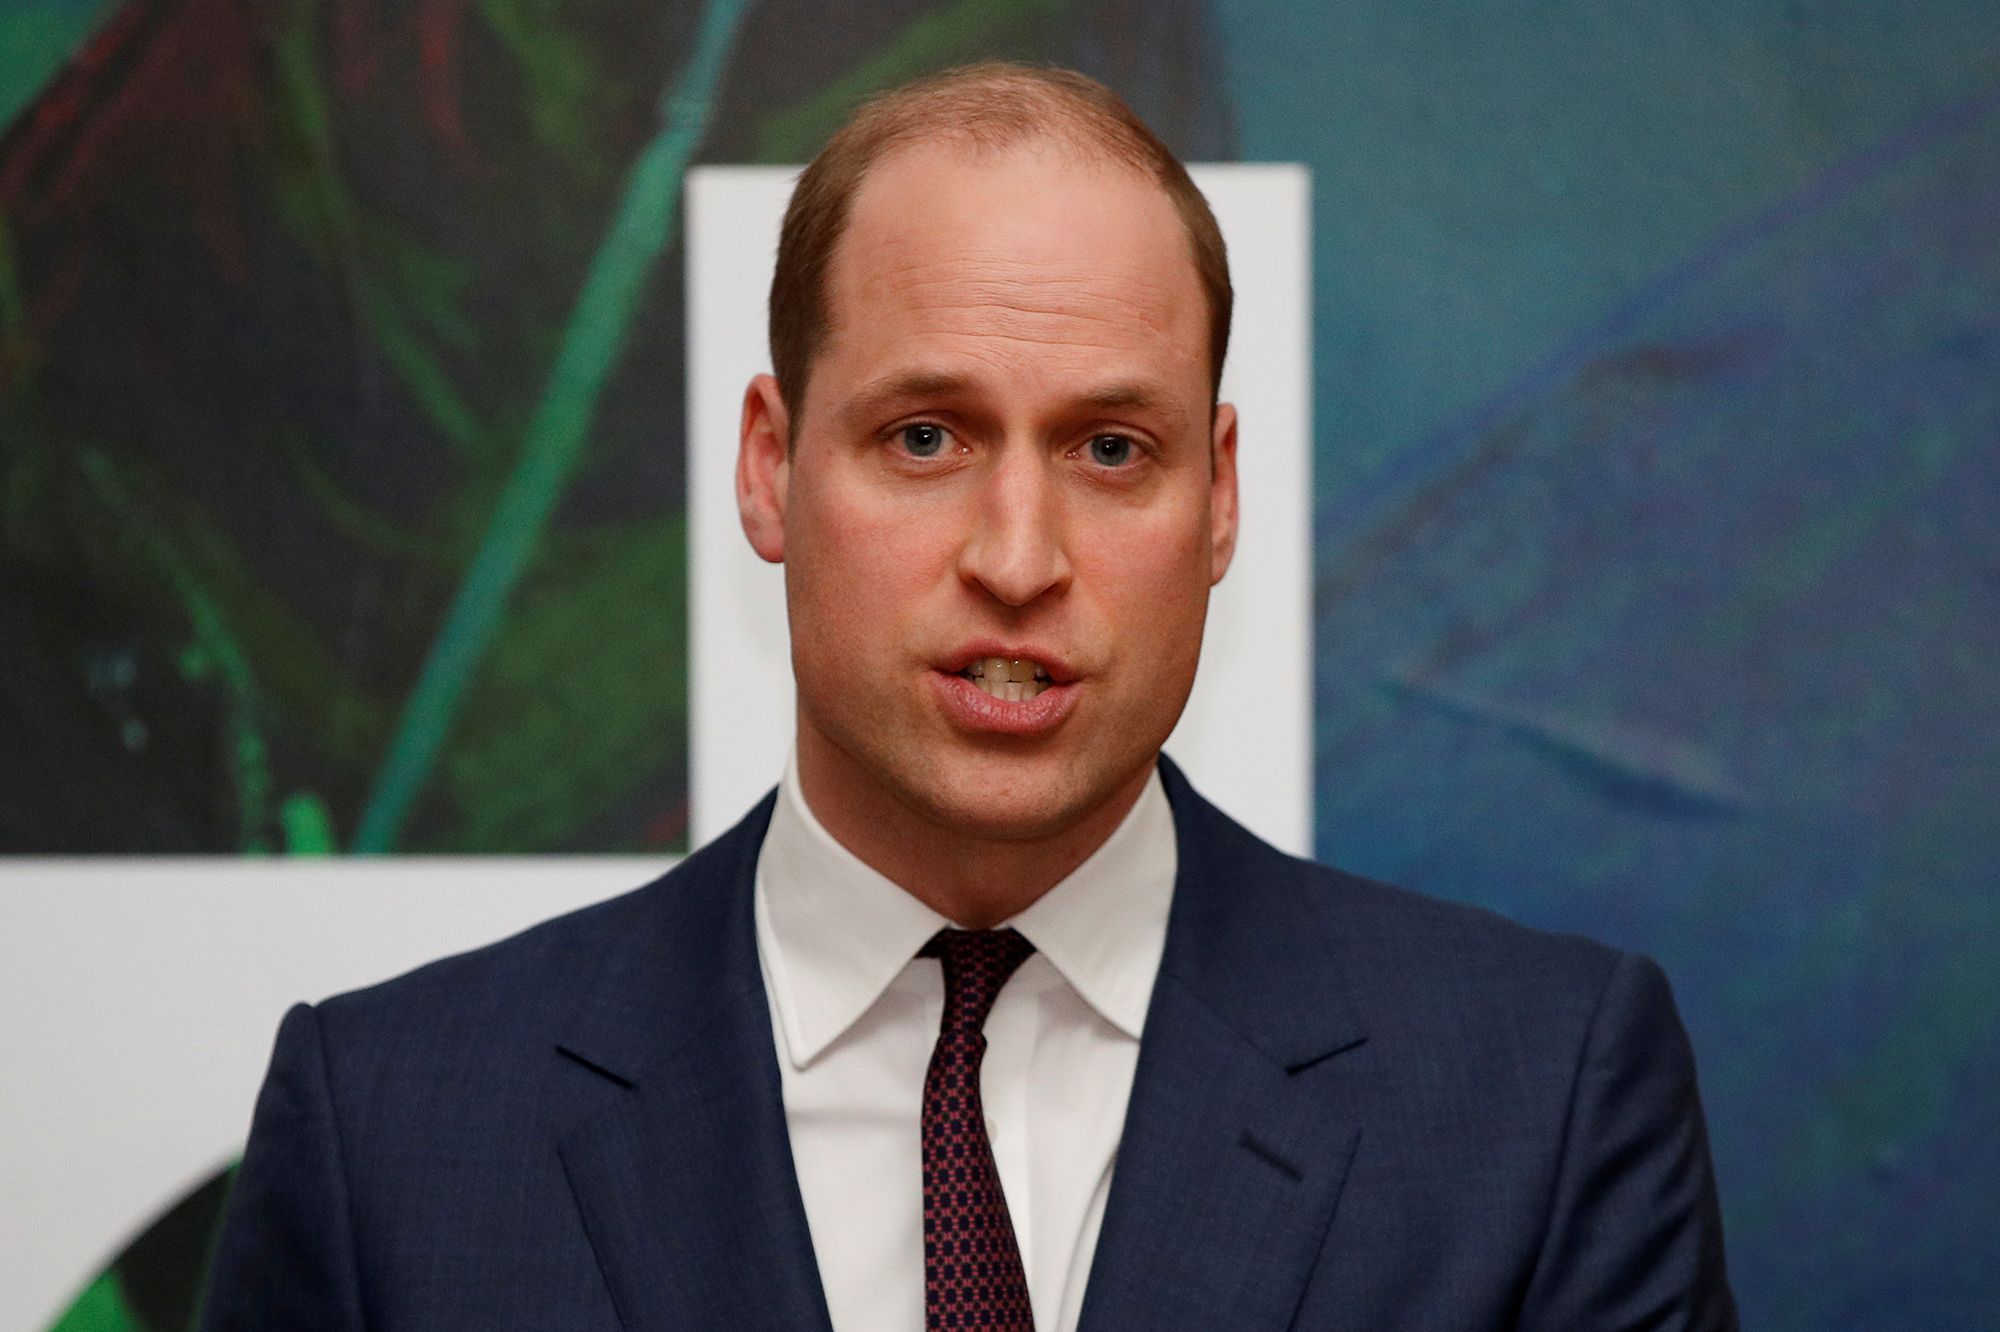 Le prince William s’engage : "Les abus racistes sont méprisables et doivent cesser maintenant"